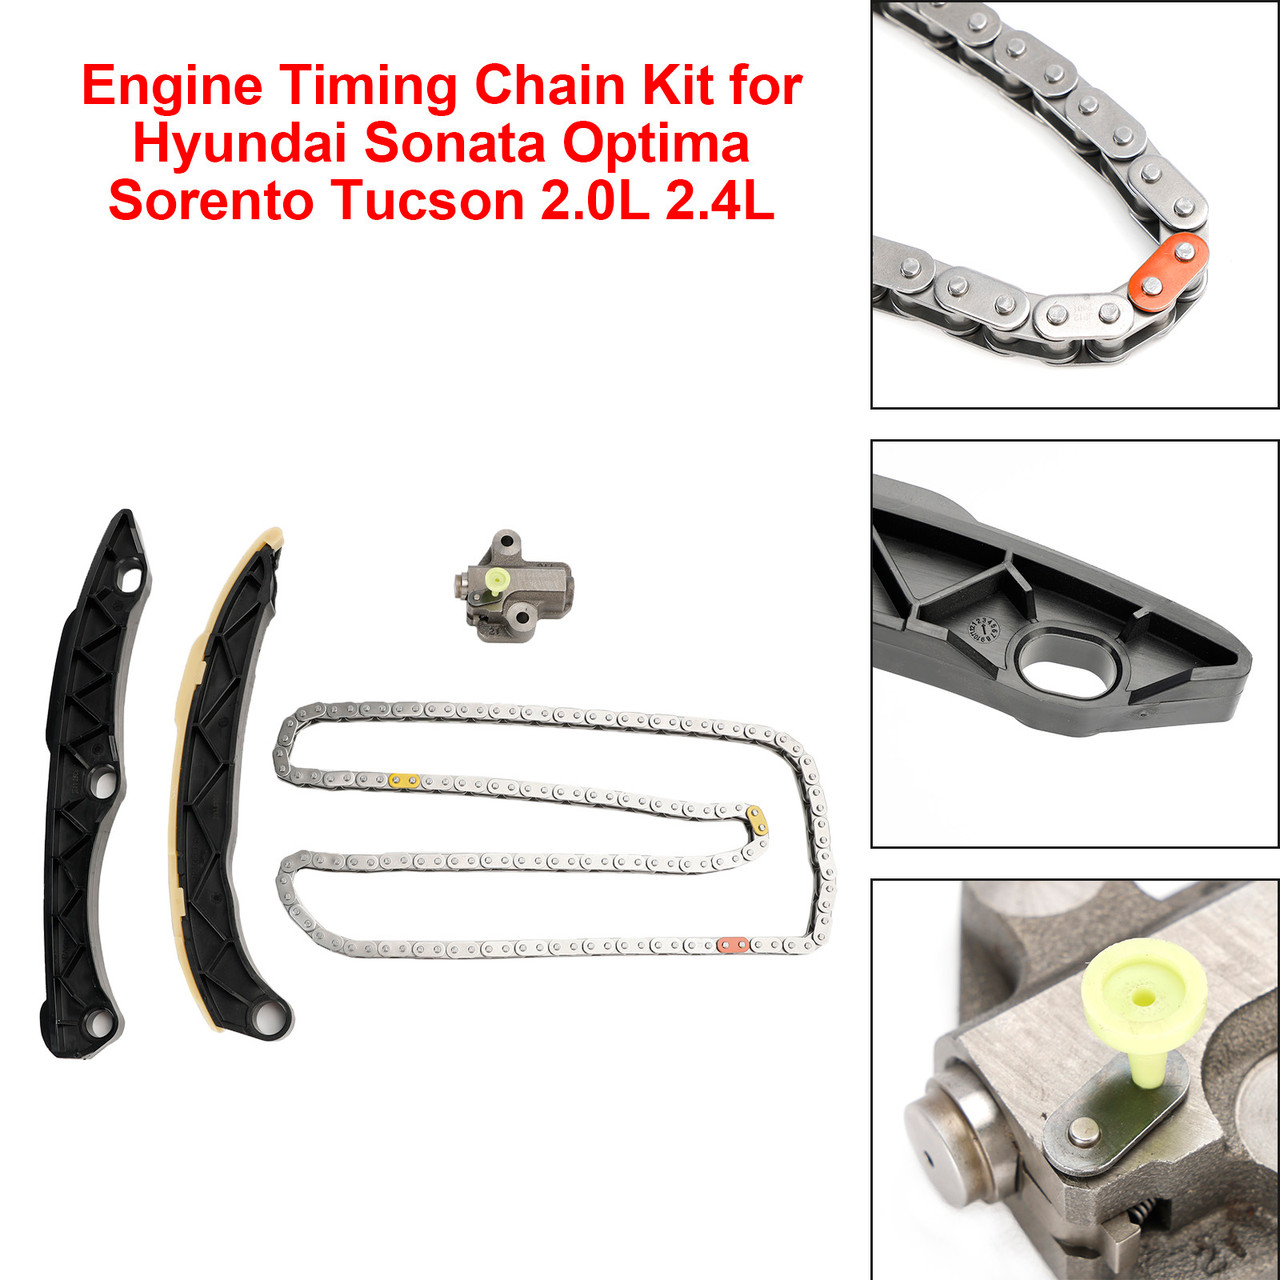 Engine Timing Chain Kit for Hyundai Sonata Optima Sorento Tucson 2.0L 2.4L 